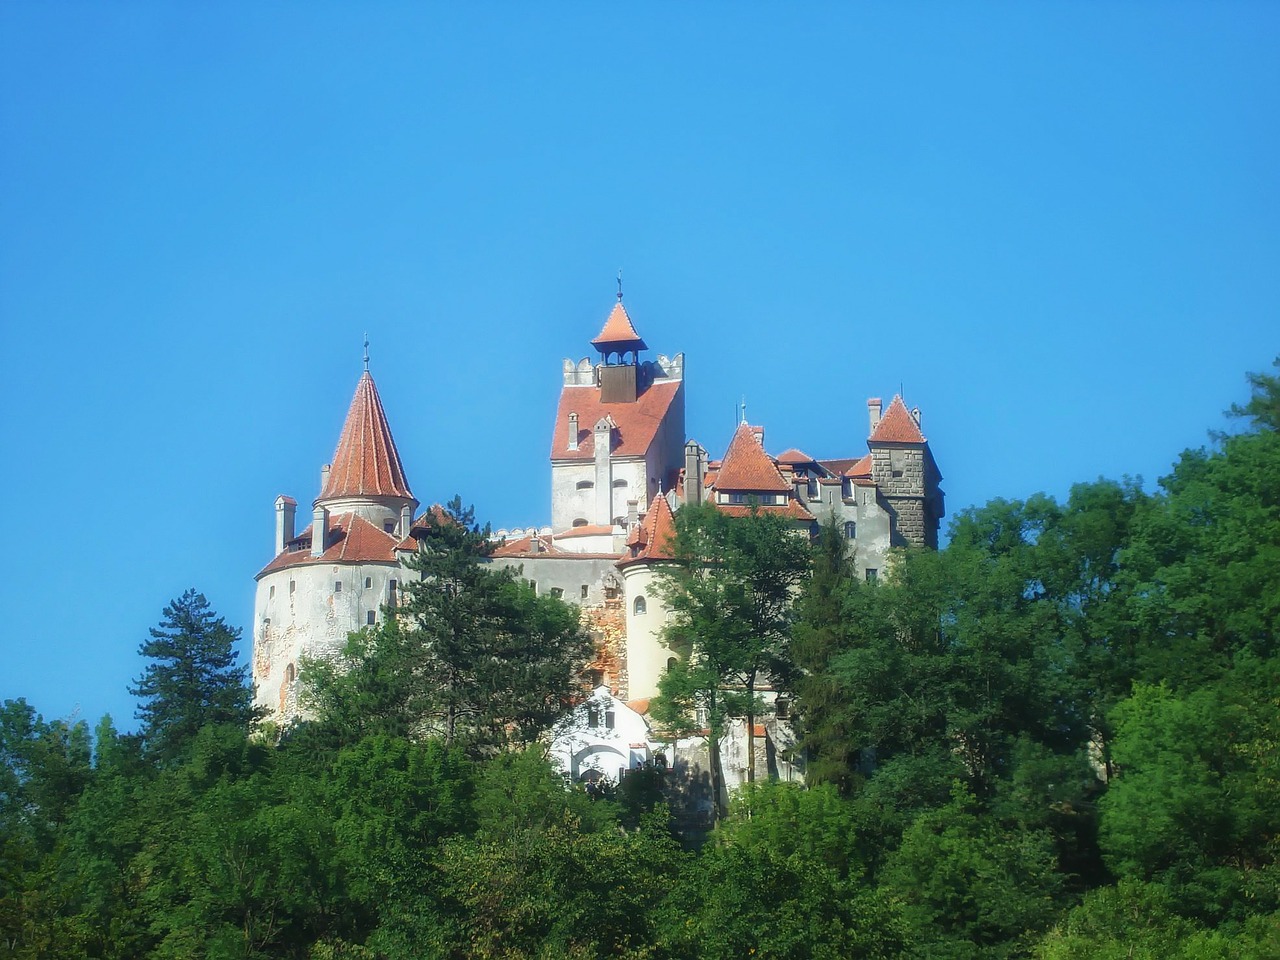 Castelul Bran, Romania